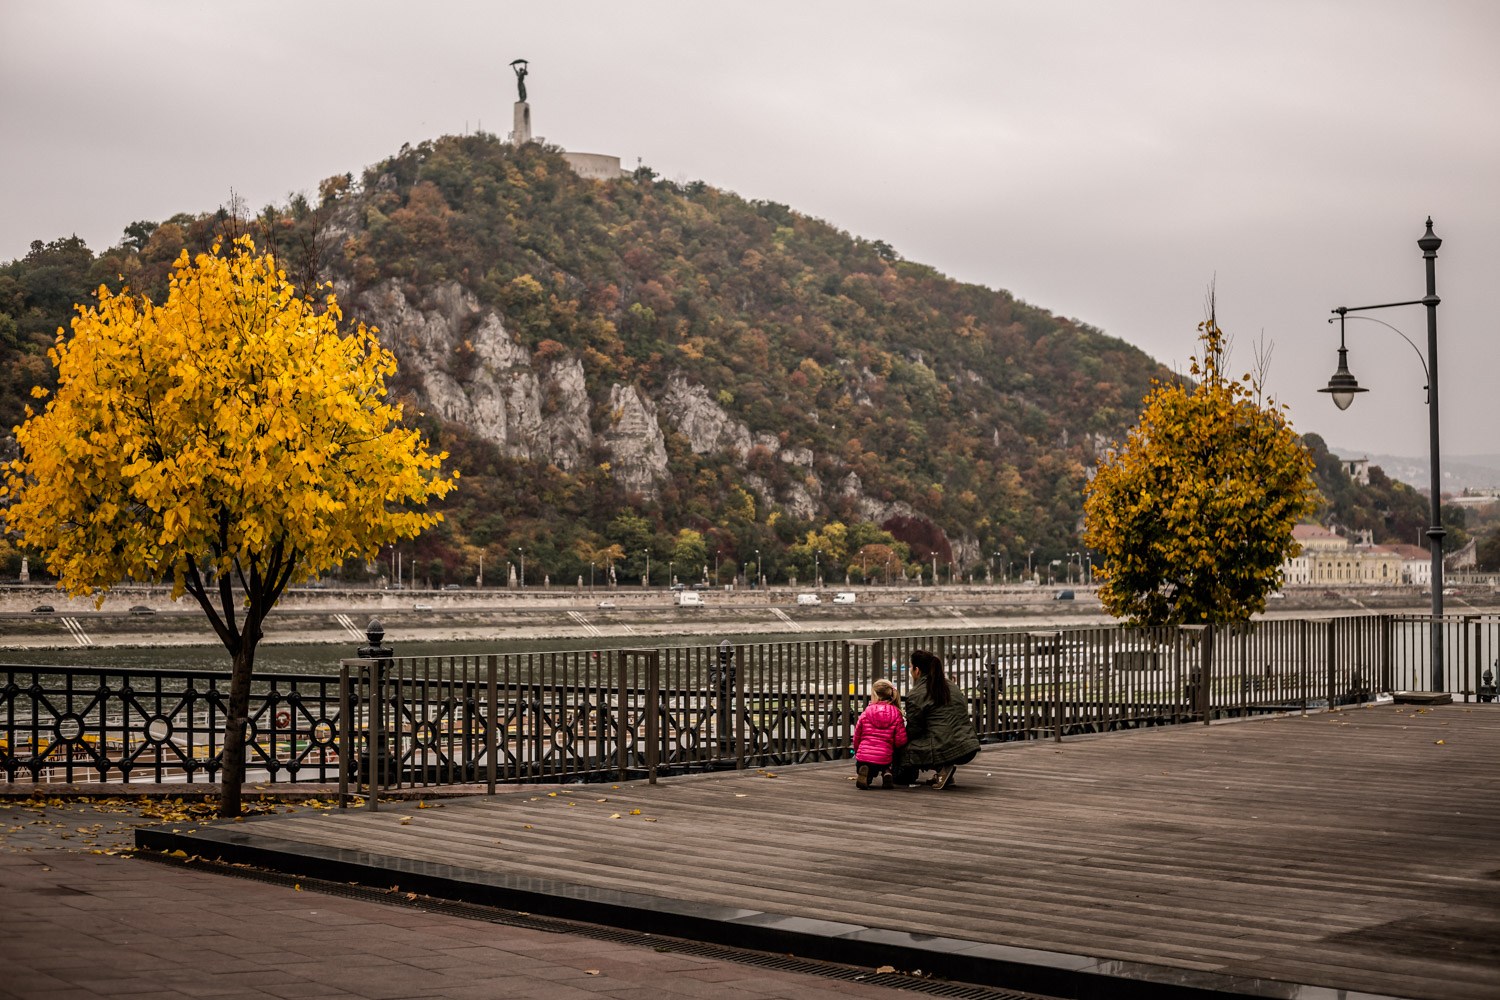 Erre kirándulj az országban ősszel! – Budapest és környéke